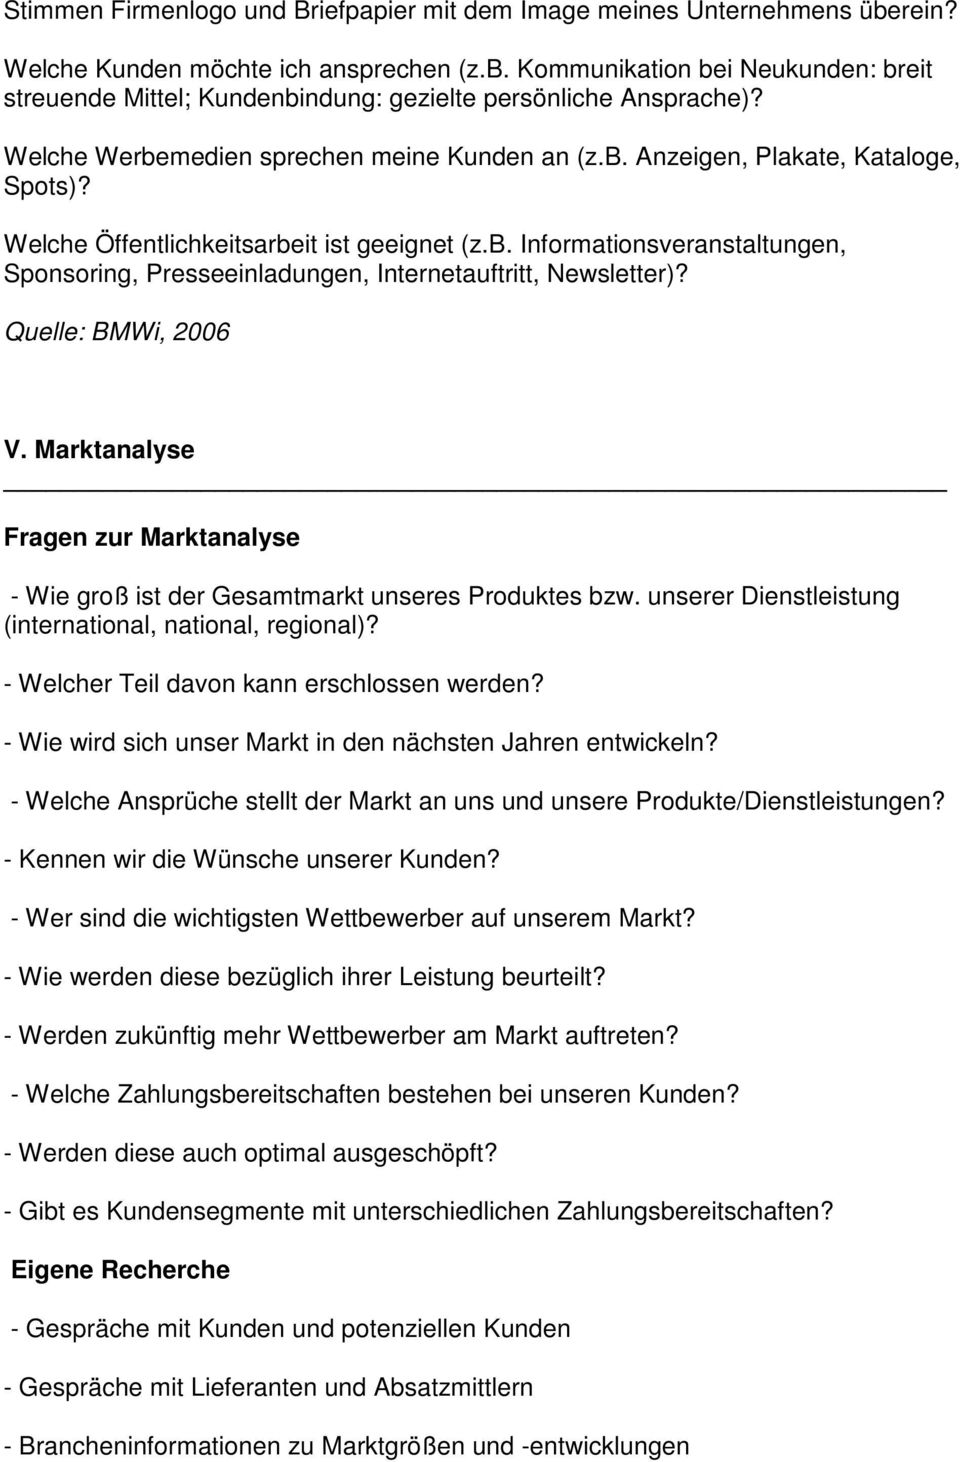 Quelle: BMWi, 2006 V. Marktanalyse Fragen zur Marktanalyse - Wie groß ist der Gesamtmarkt unseres Produktes bzw. unserer Dienstleistung (international, national, regional)?